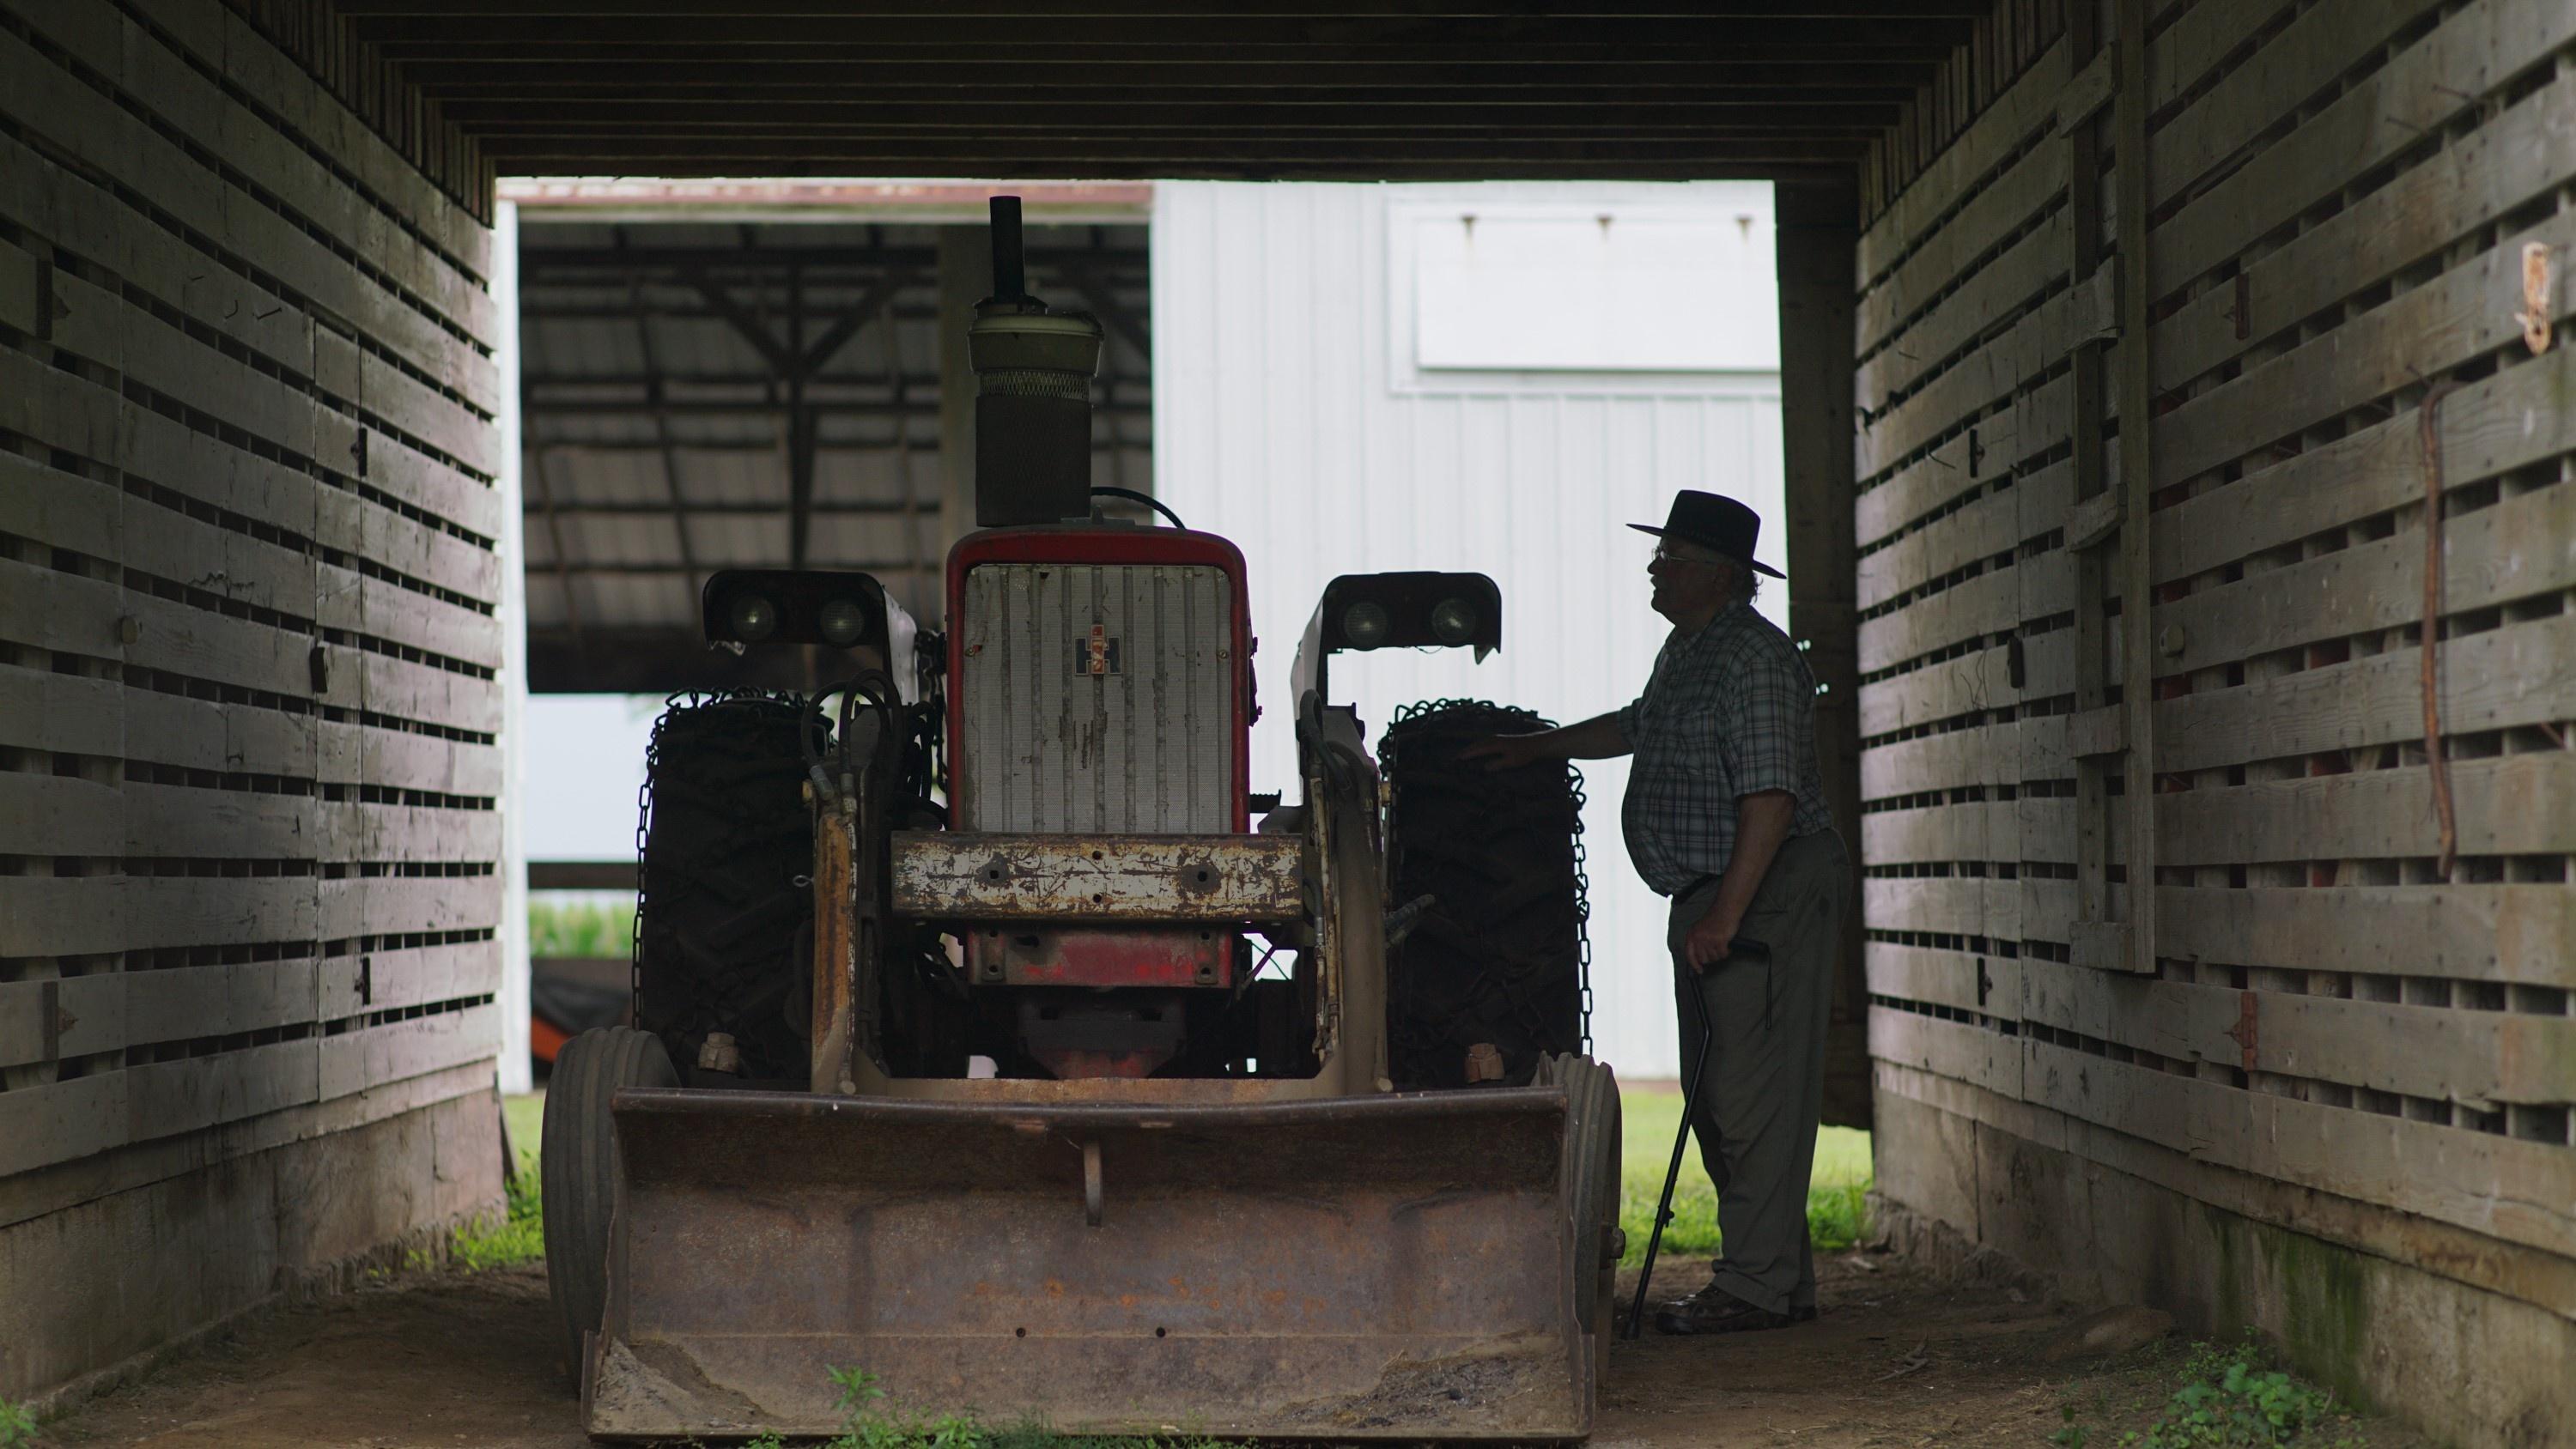 Dr. Michael Rosmann, PhD, looks at farm equipment on a farm.